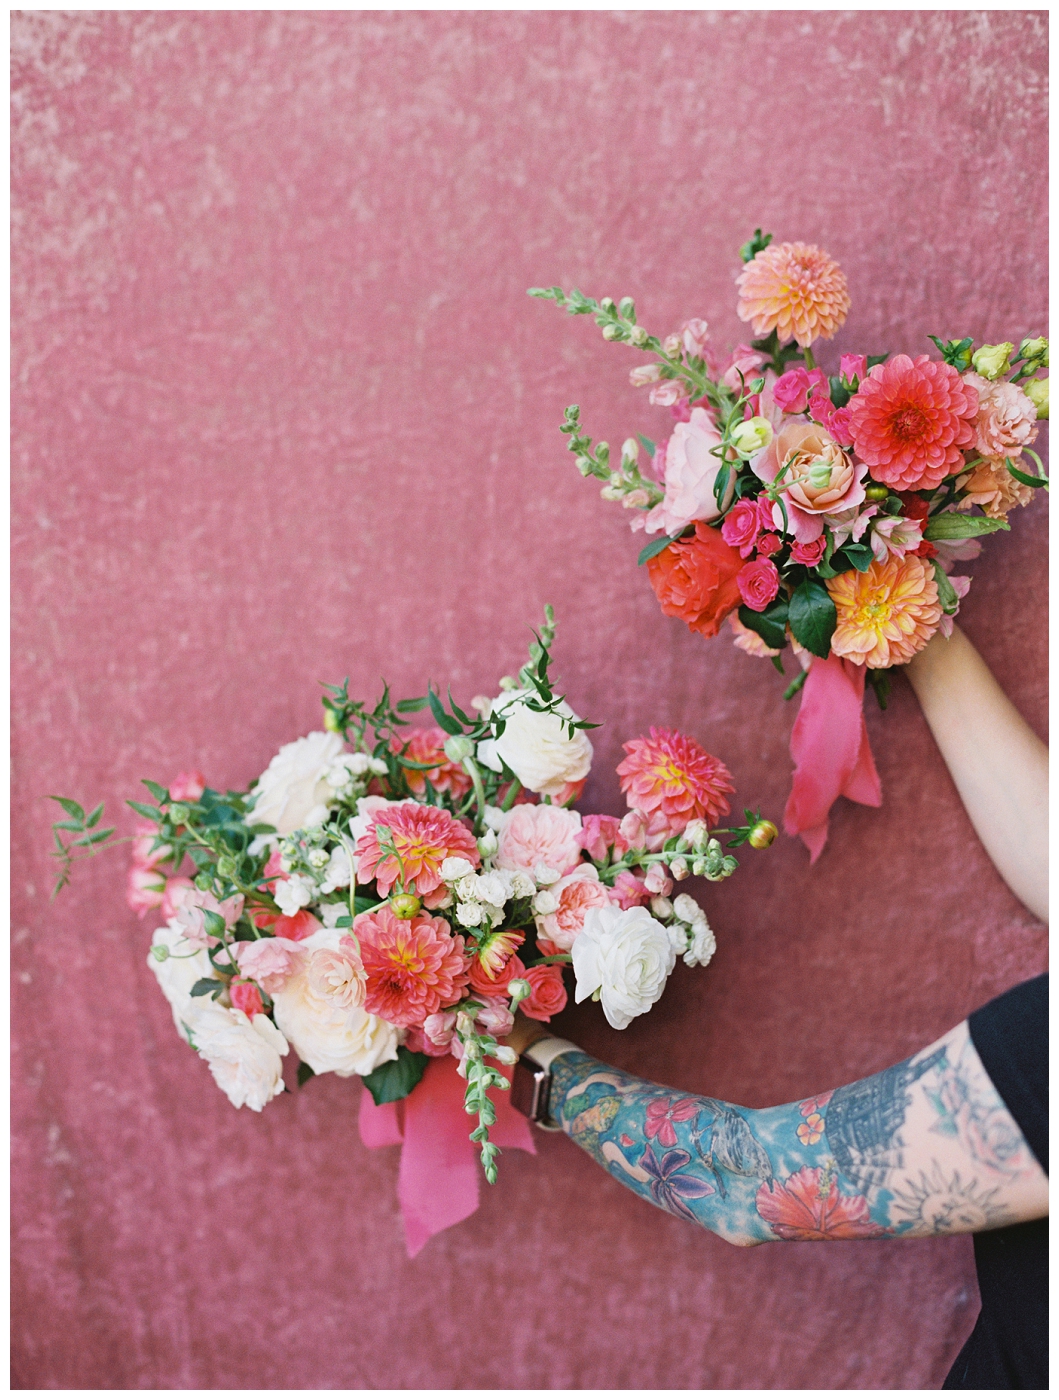 Hot Pink Pampas Grass Boho Bridal Boquet / Hot Pink Silk Flowers Fake  Flower Wedding Bouquet 